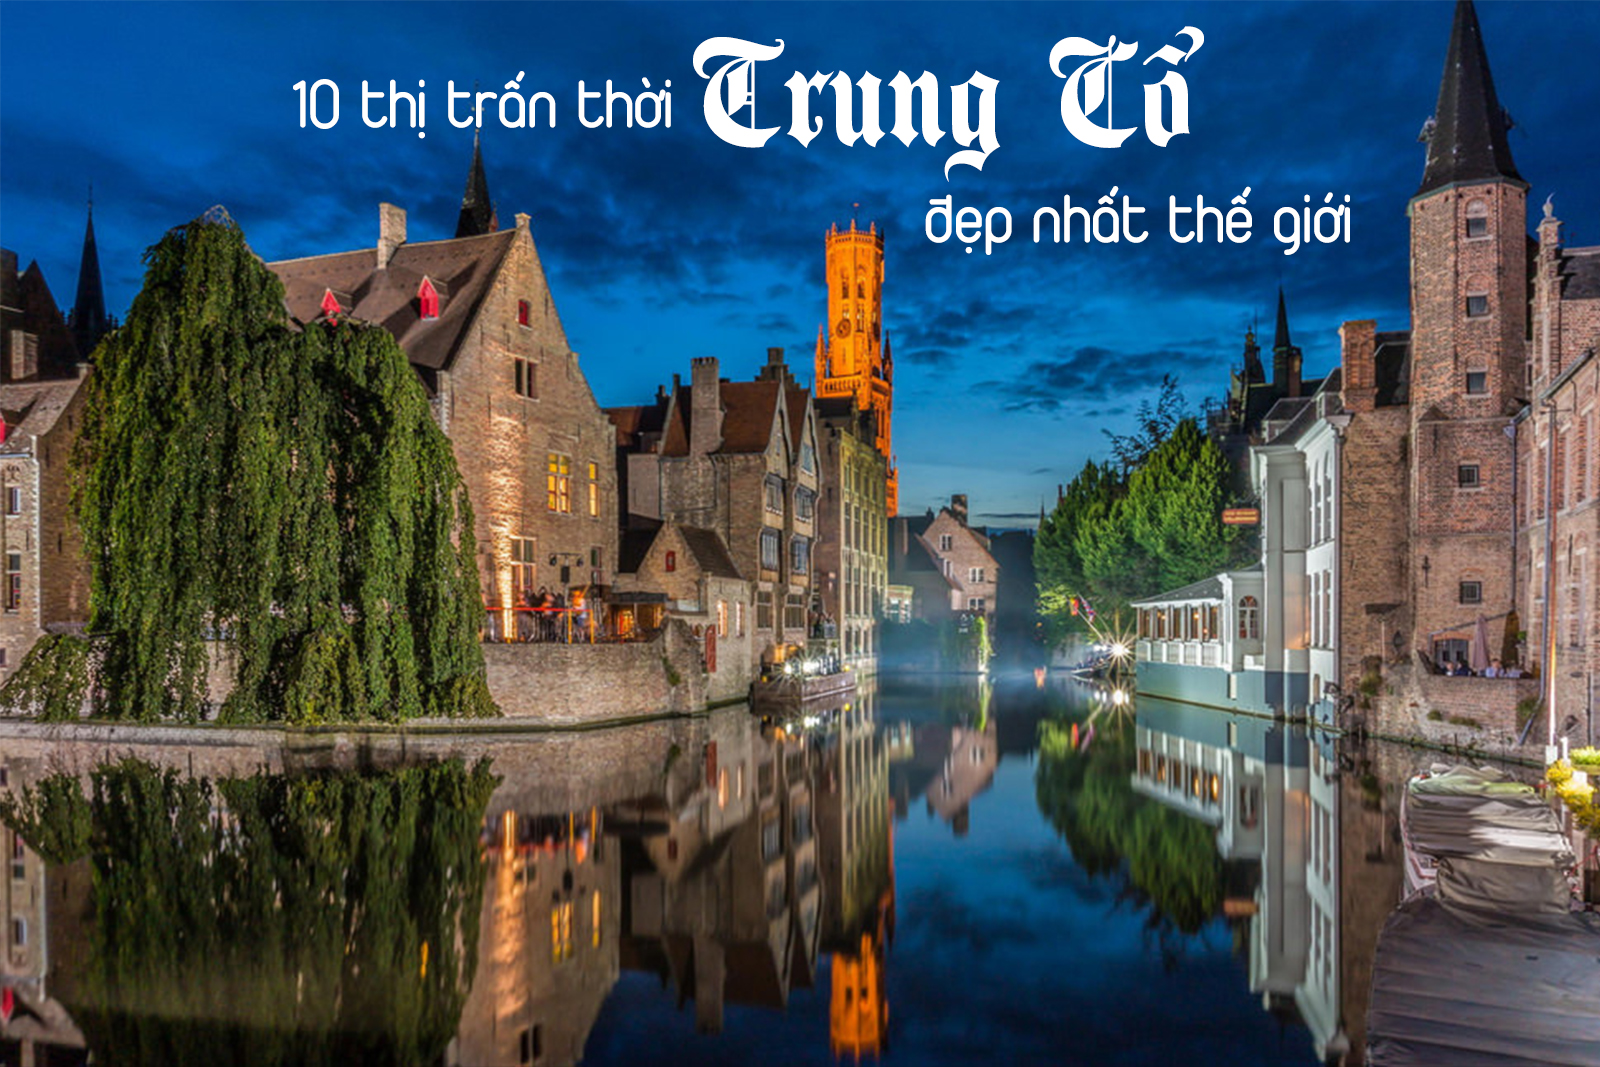 10 thị trấn thời Trung cổ đẹp nhất thế giới - 1